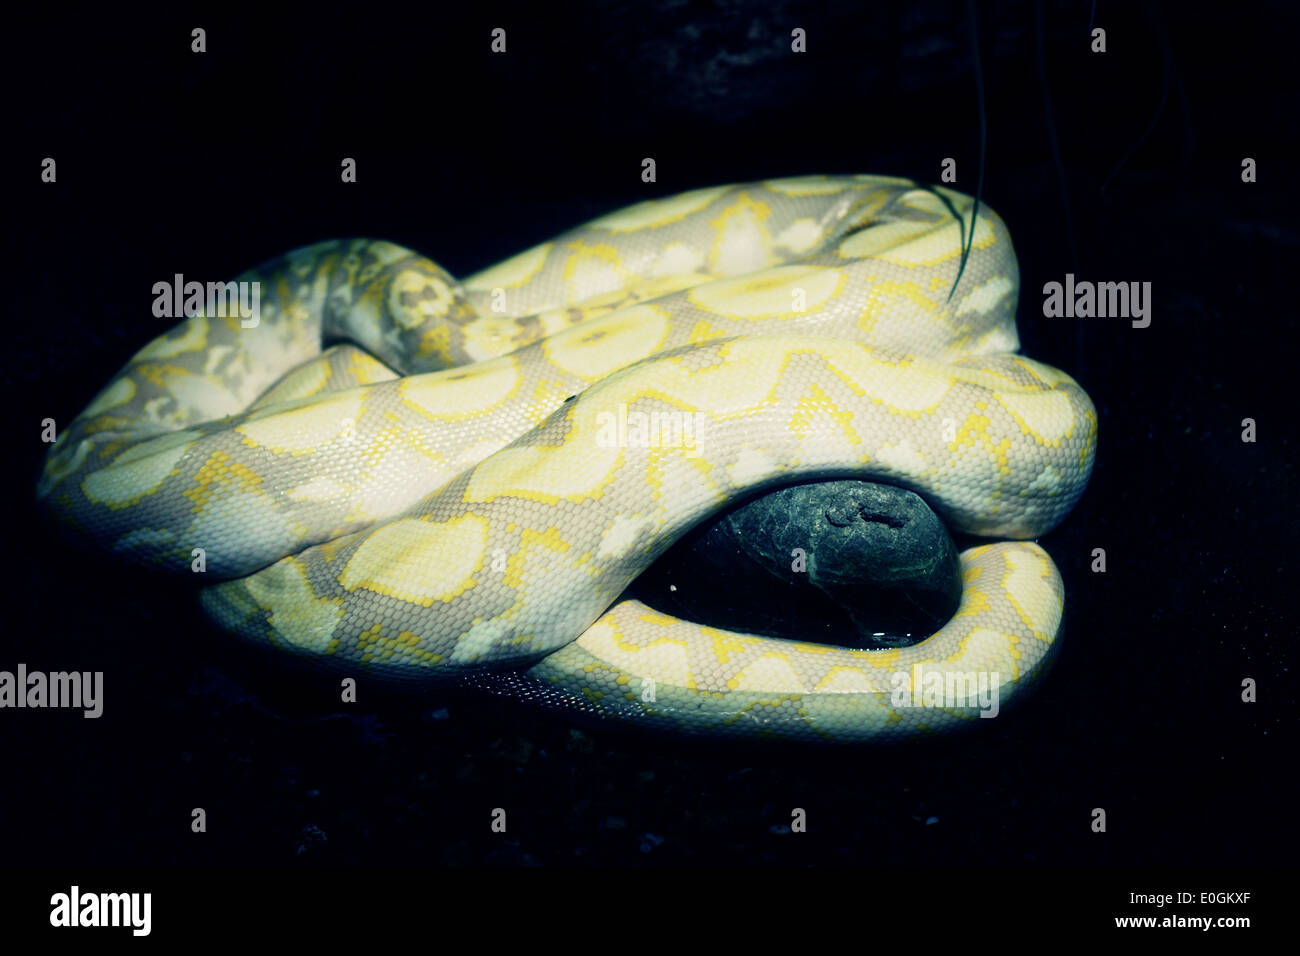 Pythonidae Python Snake in the Dark Stock Photo